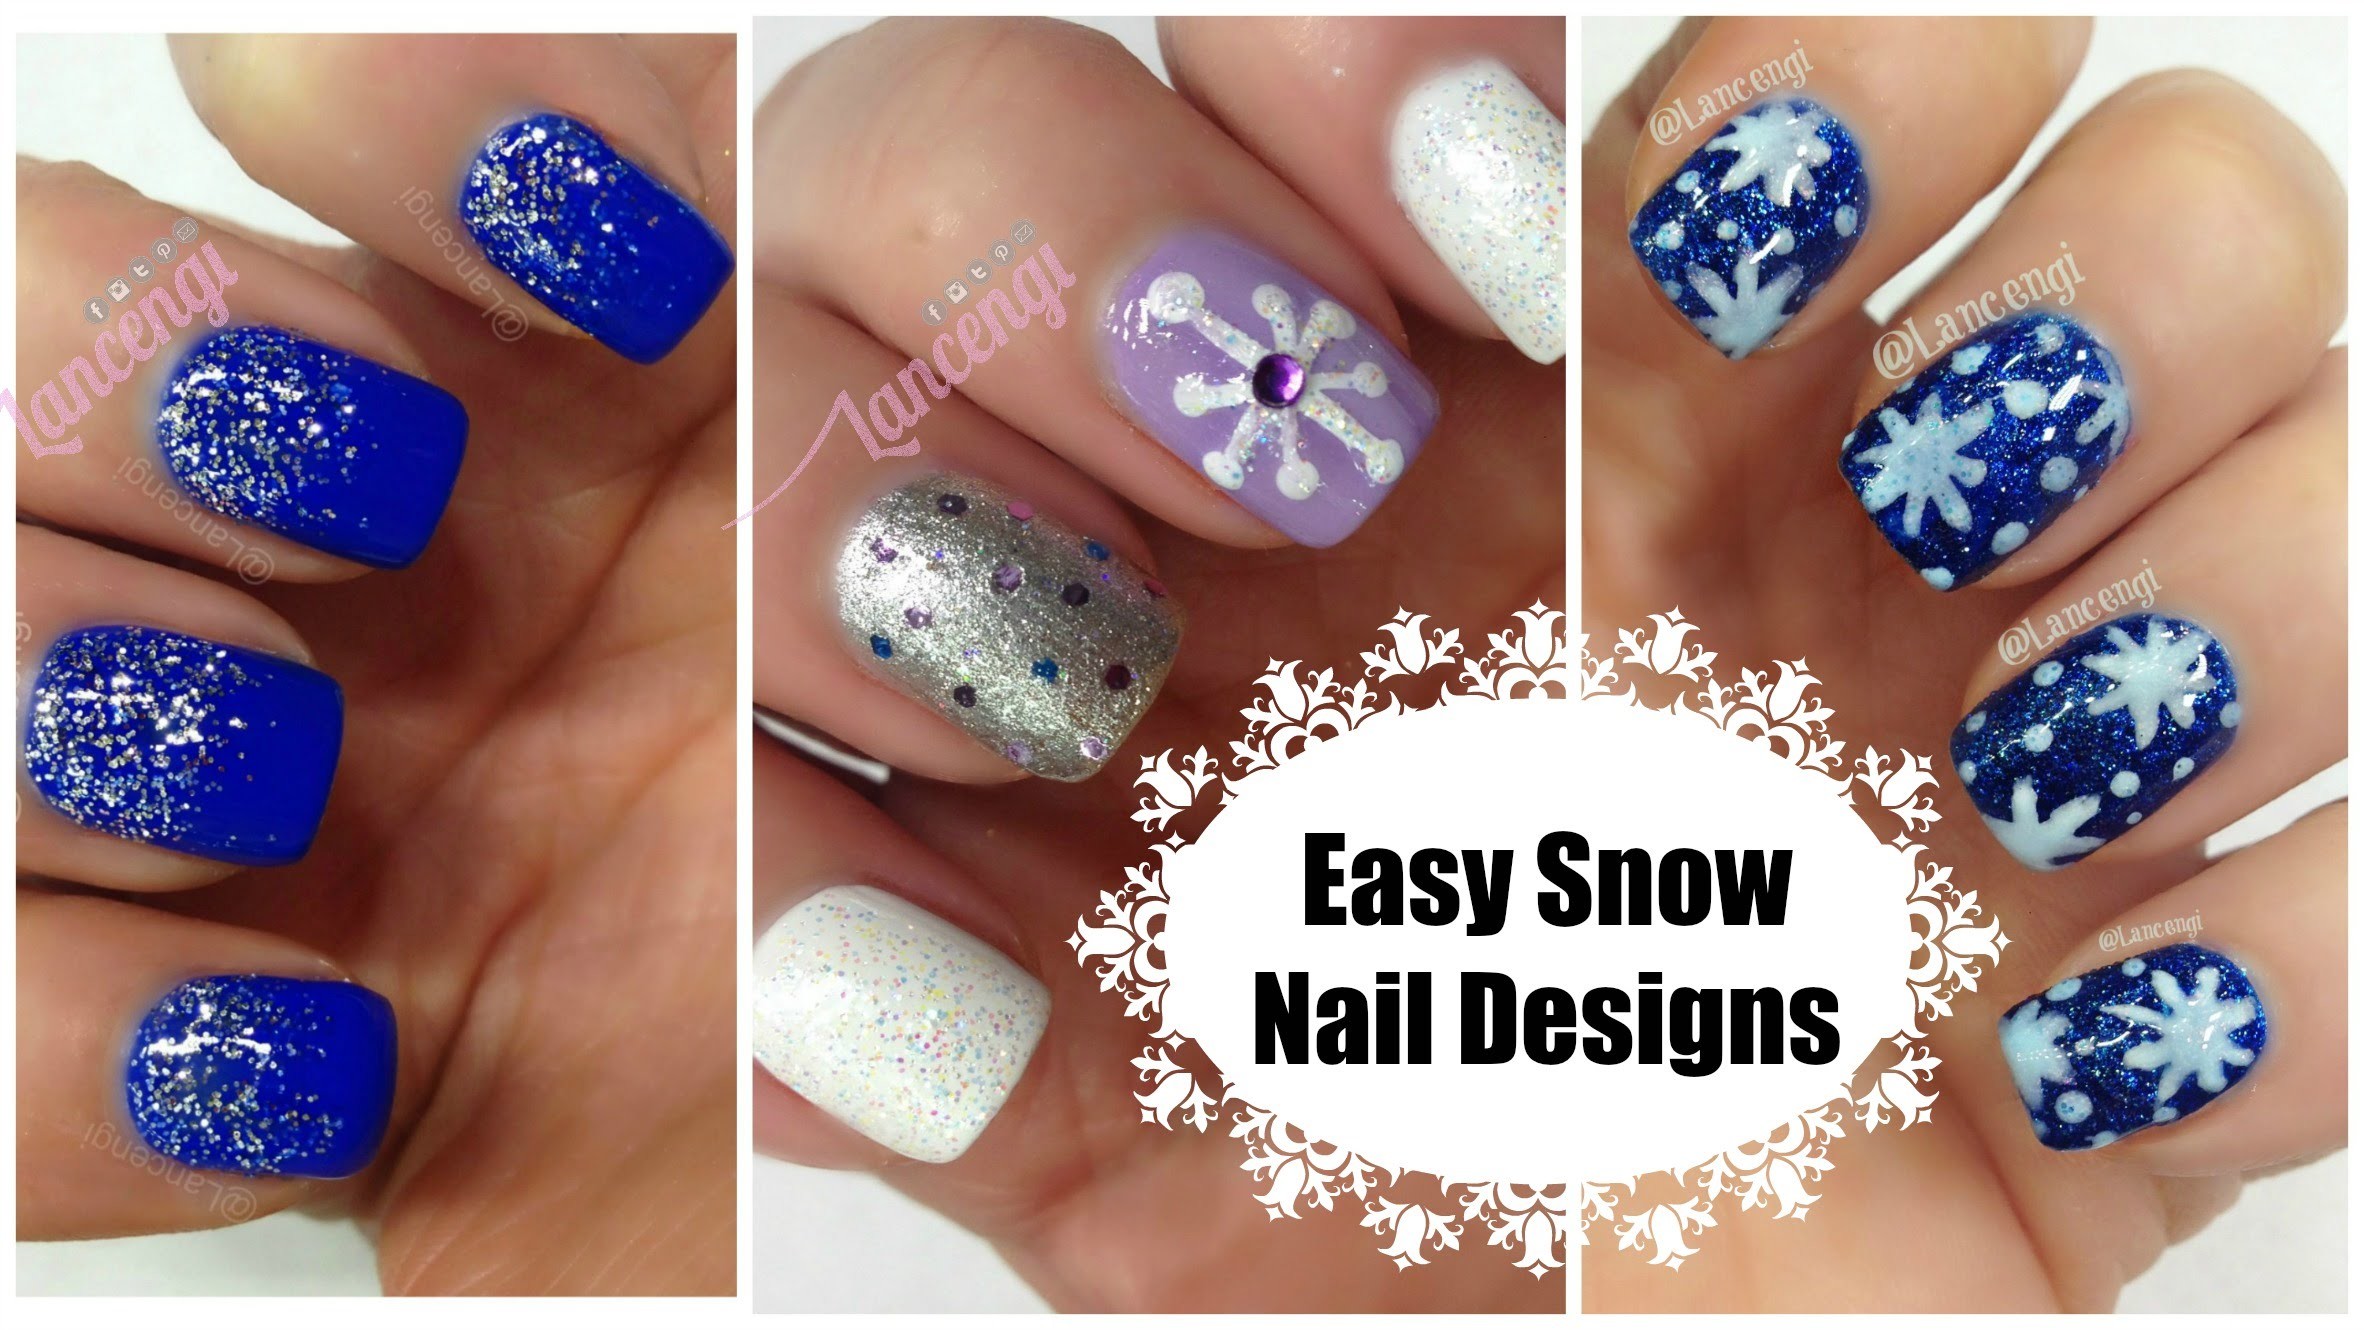 2. "Holiday Snowflake Nail Art Design" - wide 6